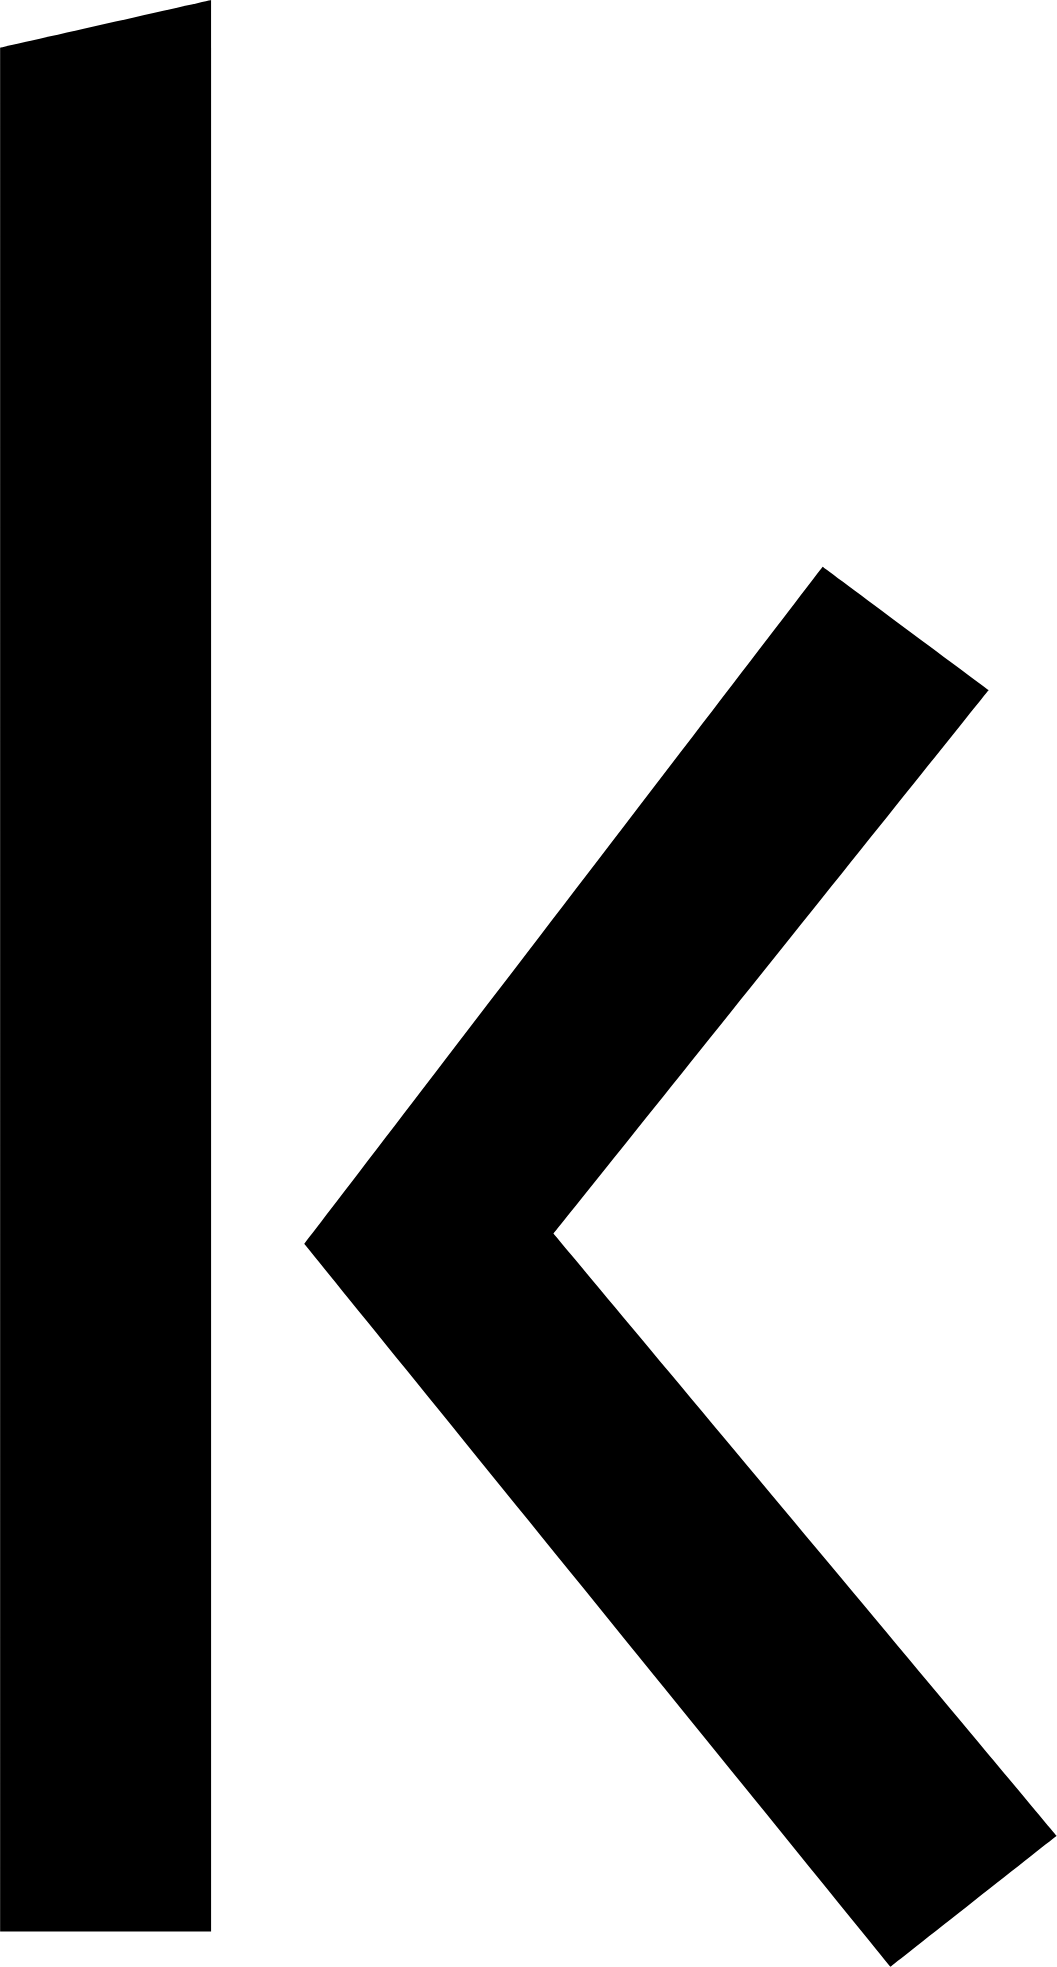 Kakao Pay logo (PNG transparent)